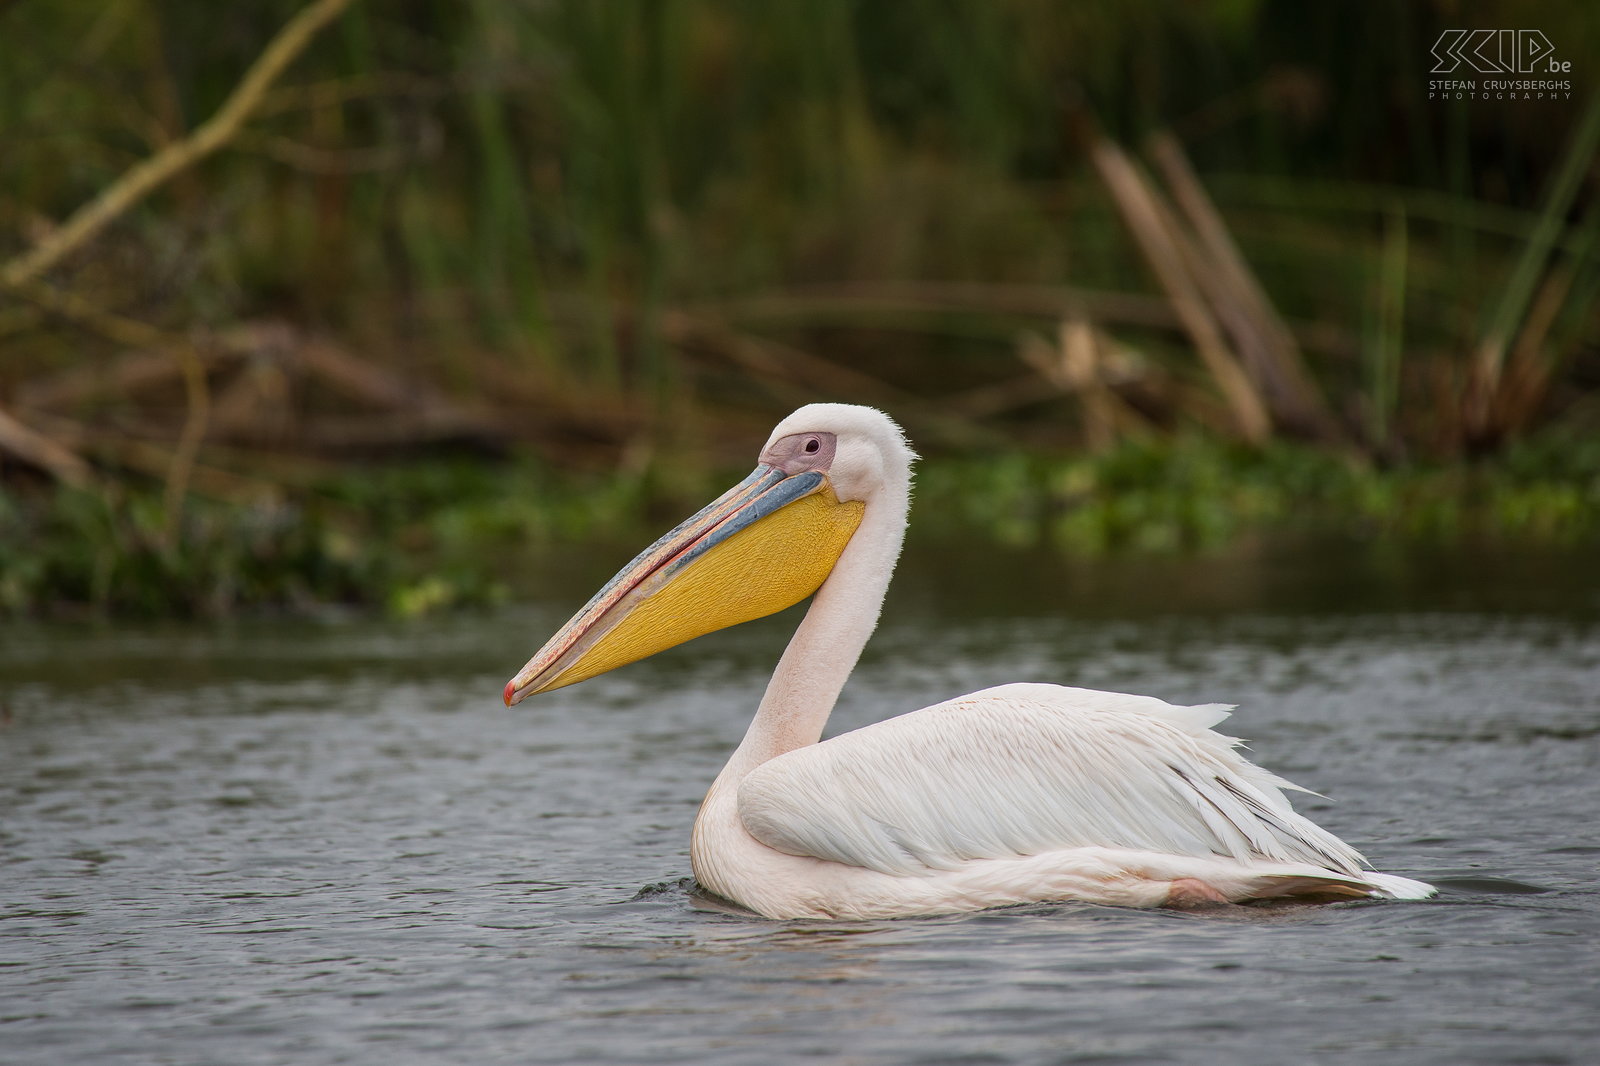 Lake Naivasha - Roze pelikaan (Great White Pelican, Pelecanus onocrotalus)  Stefan Cruysberghs